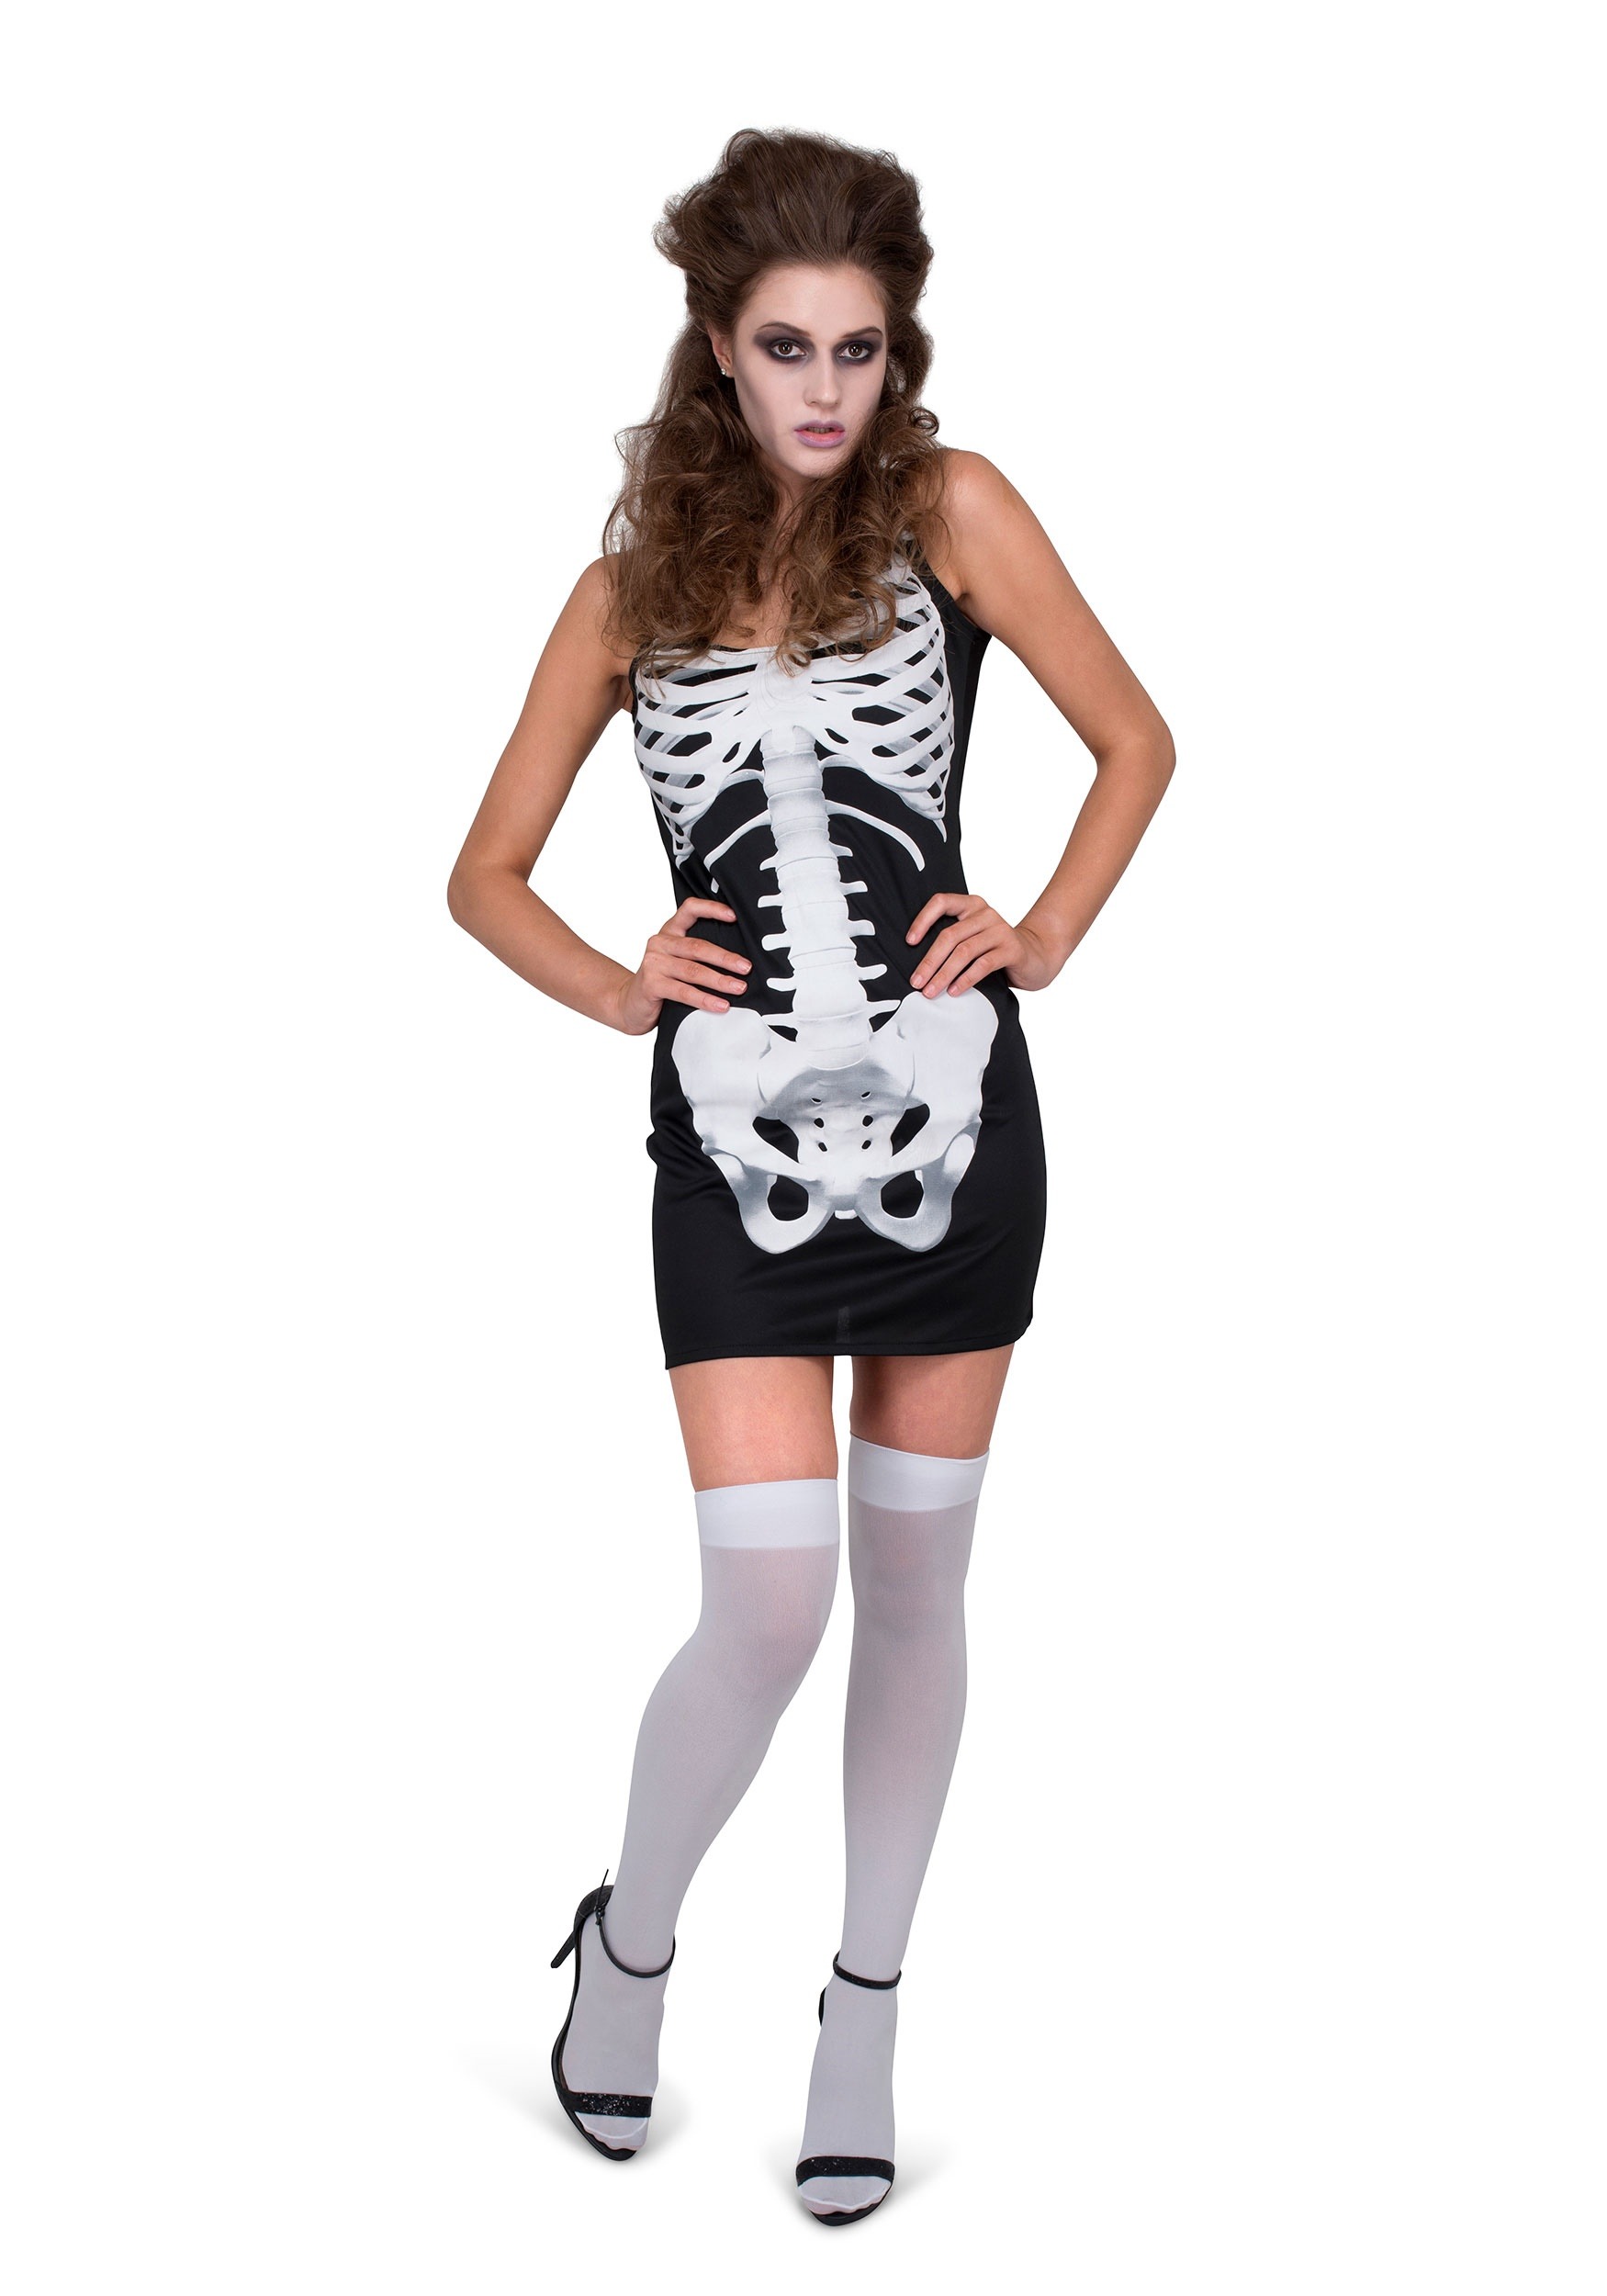 Women’s Skeleton Costume Dress